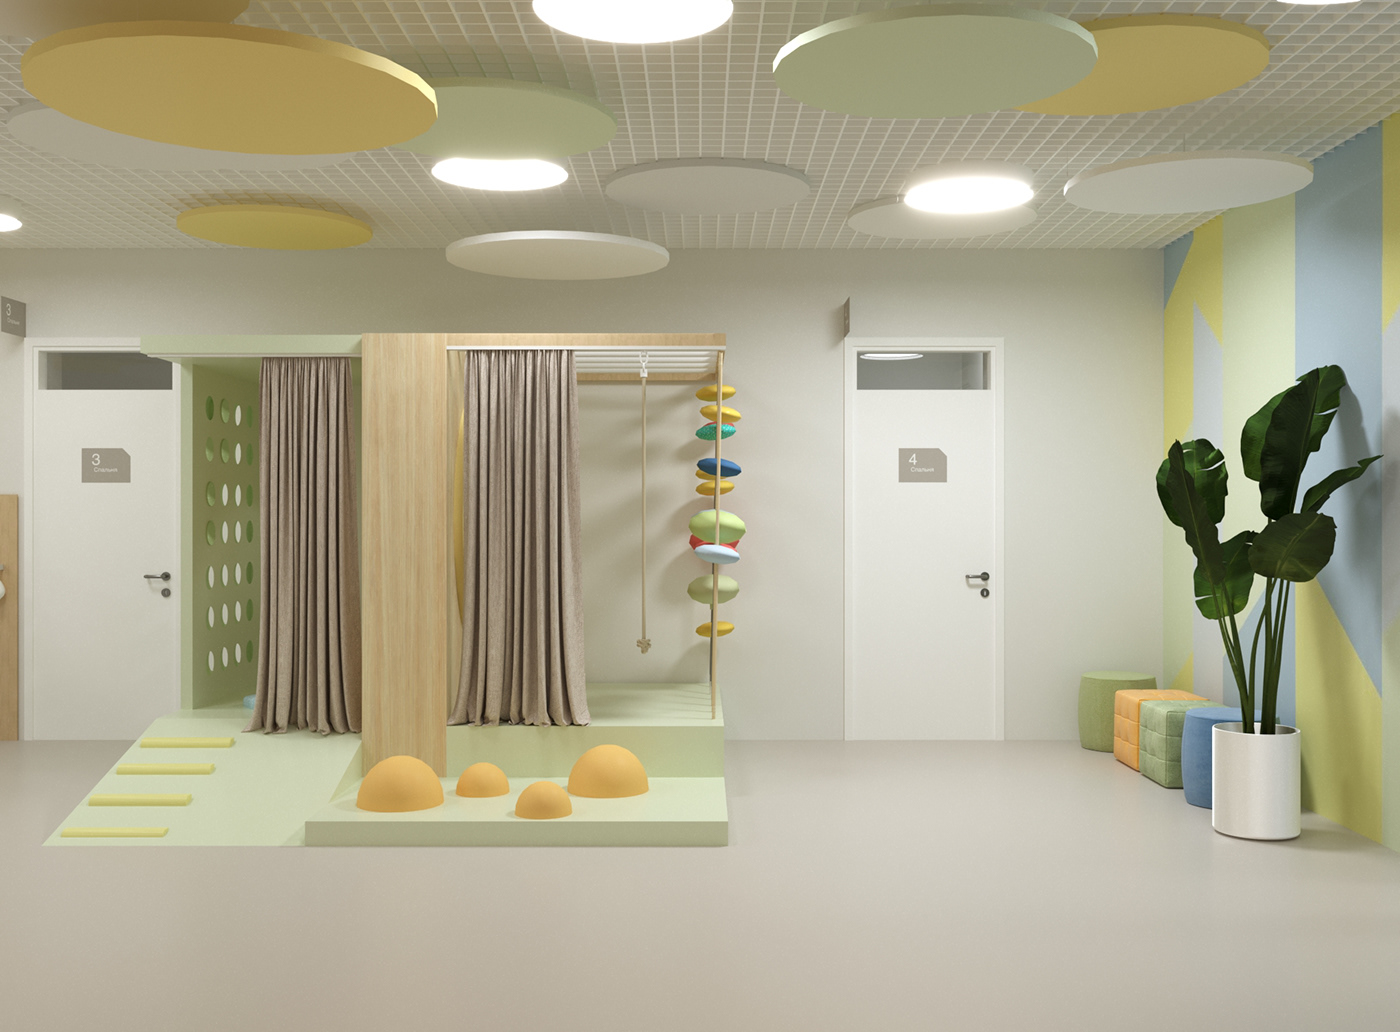 3ds max architecture corona Interior interior design  Modern Design School Project